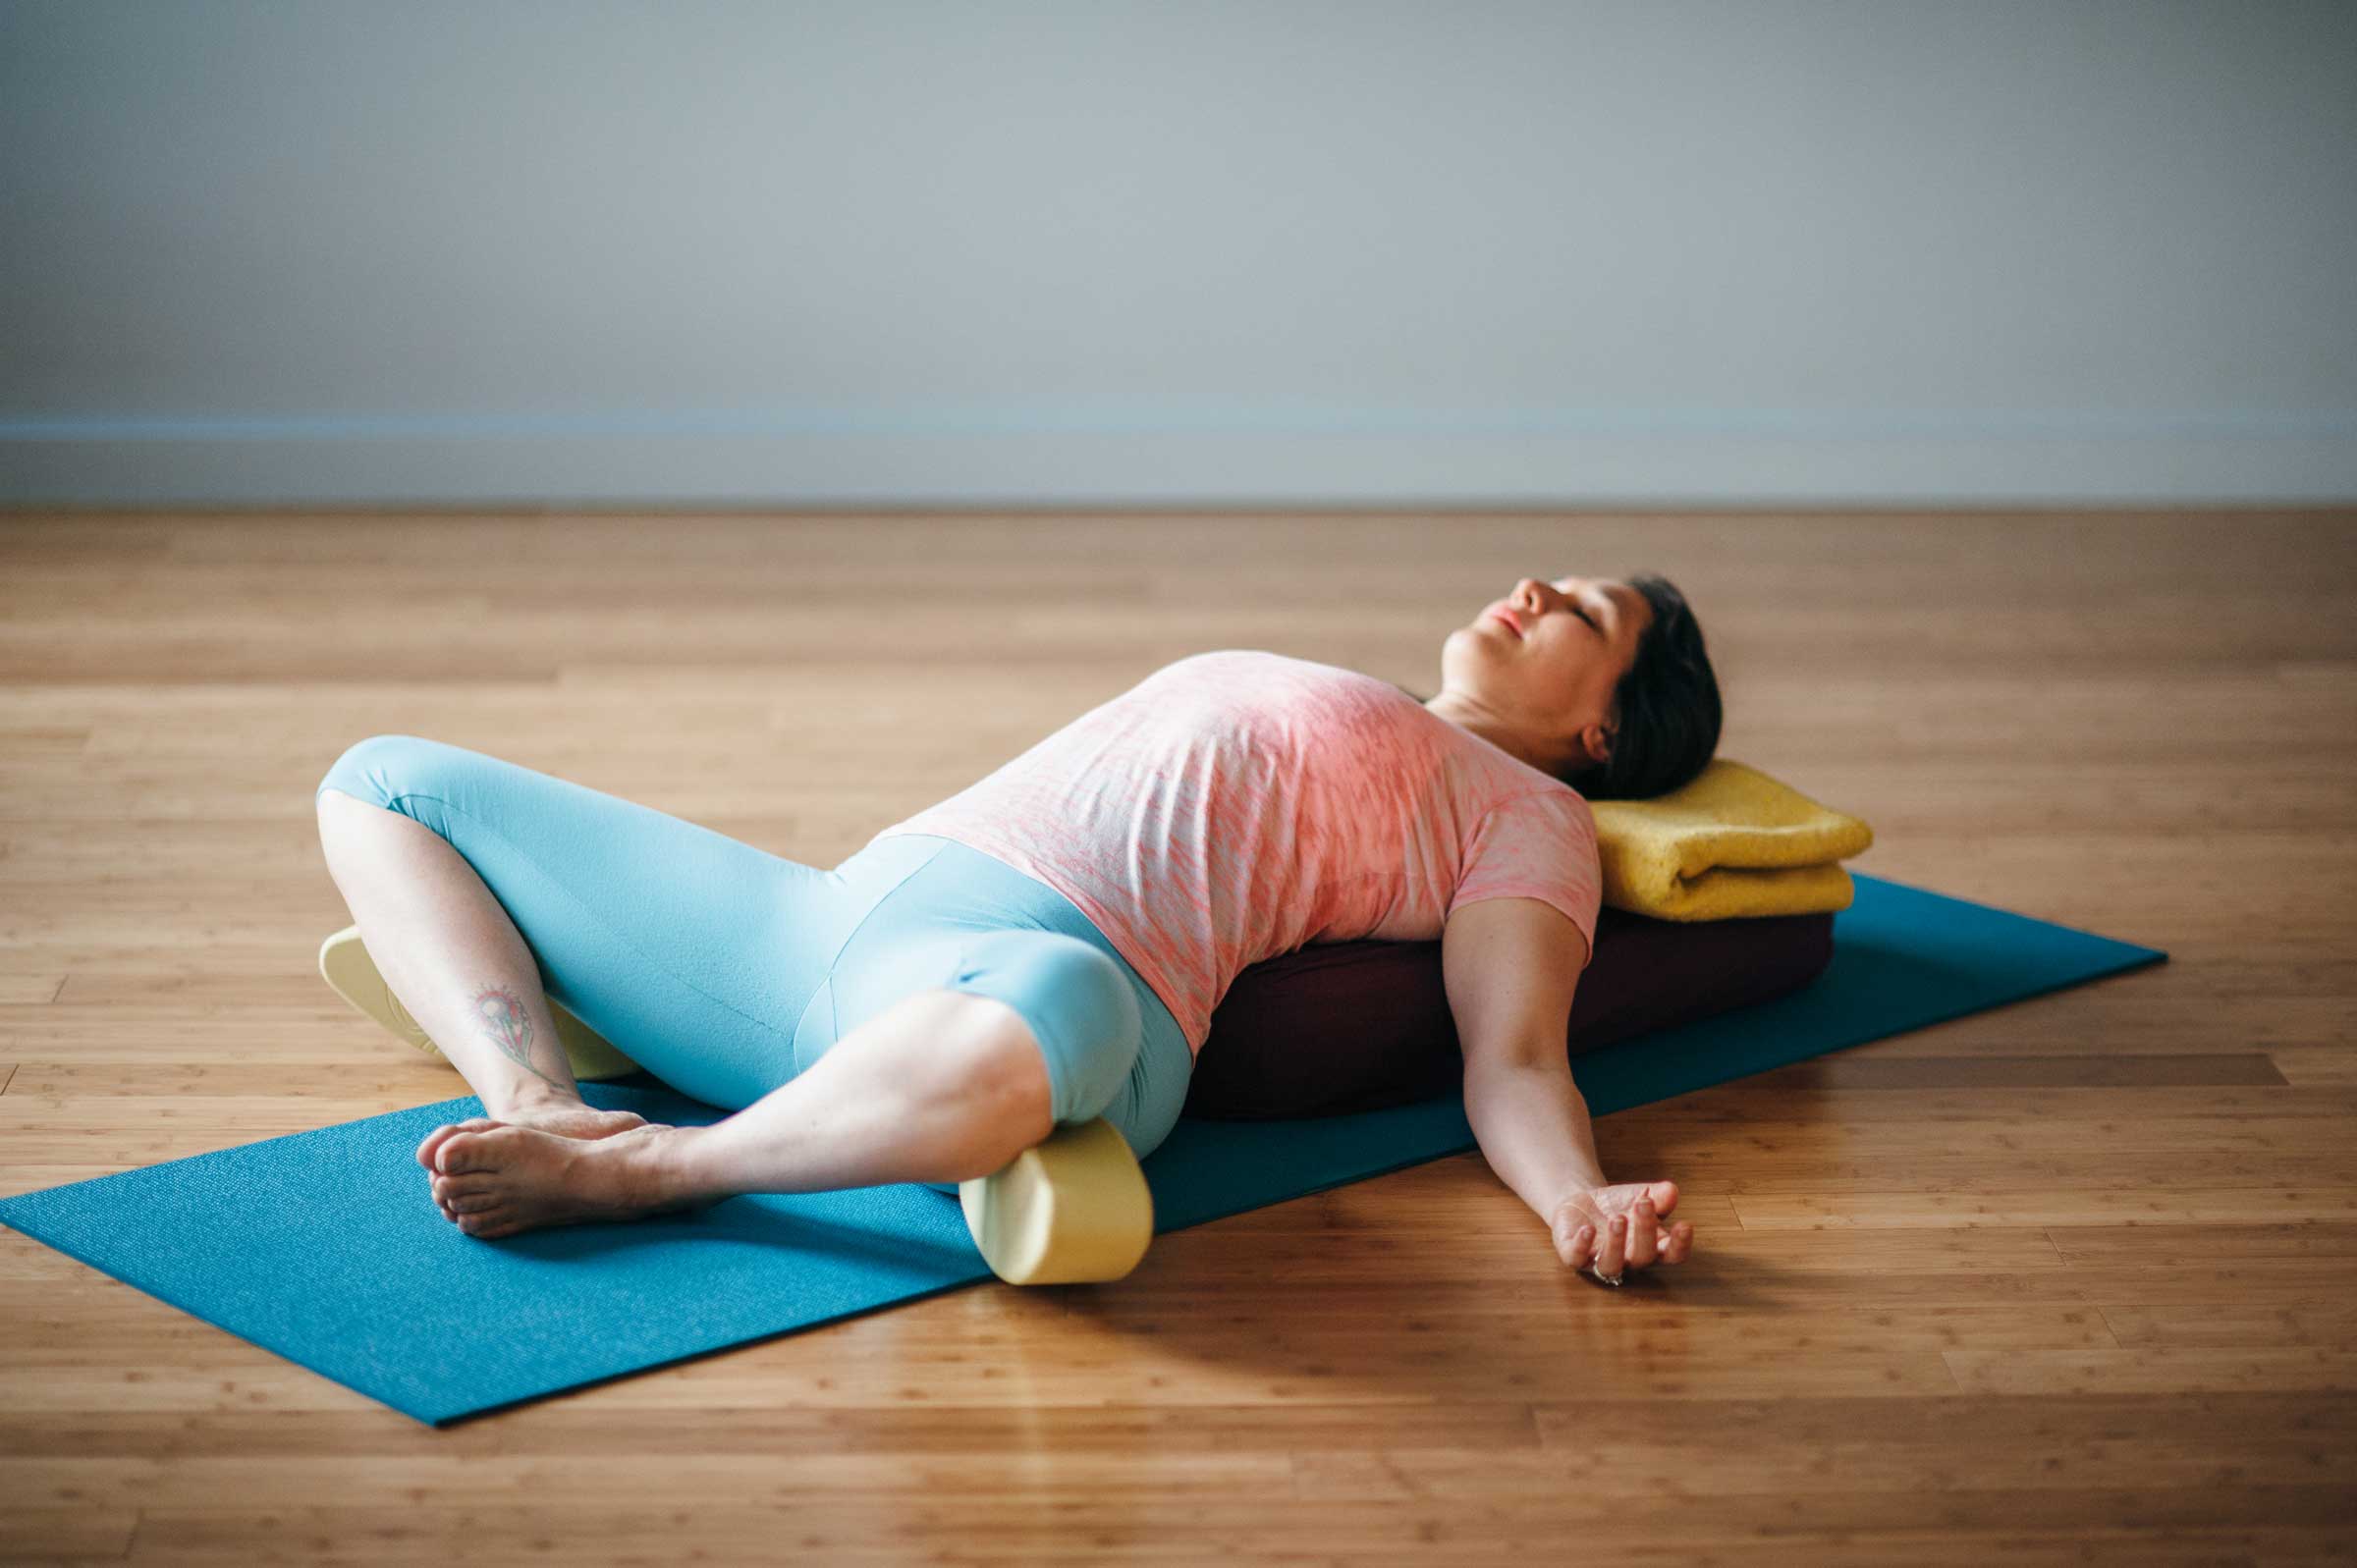 Việc nằm xuống và mở rộng cơ lưng giúp giảm căng thẳng tích tụ nhanh chóng.